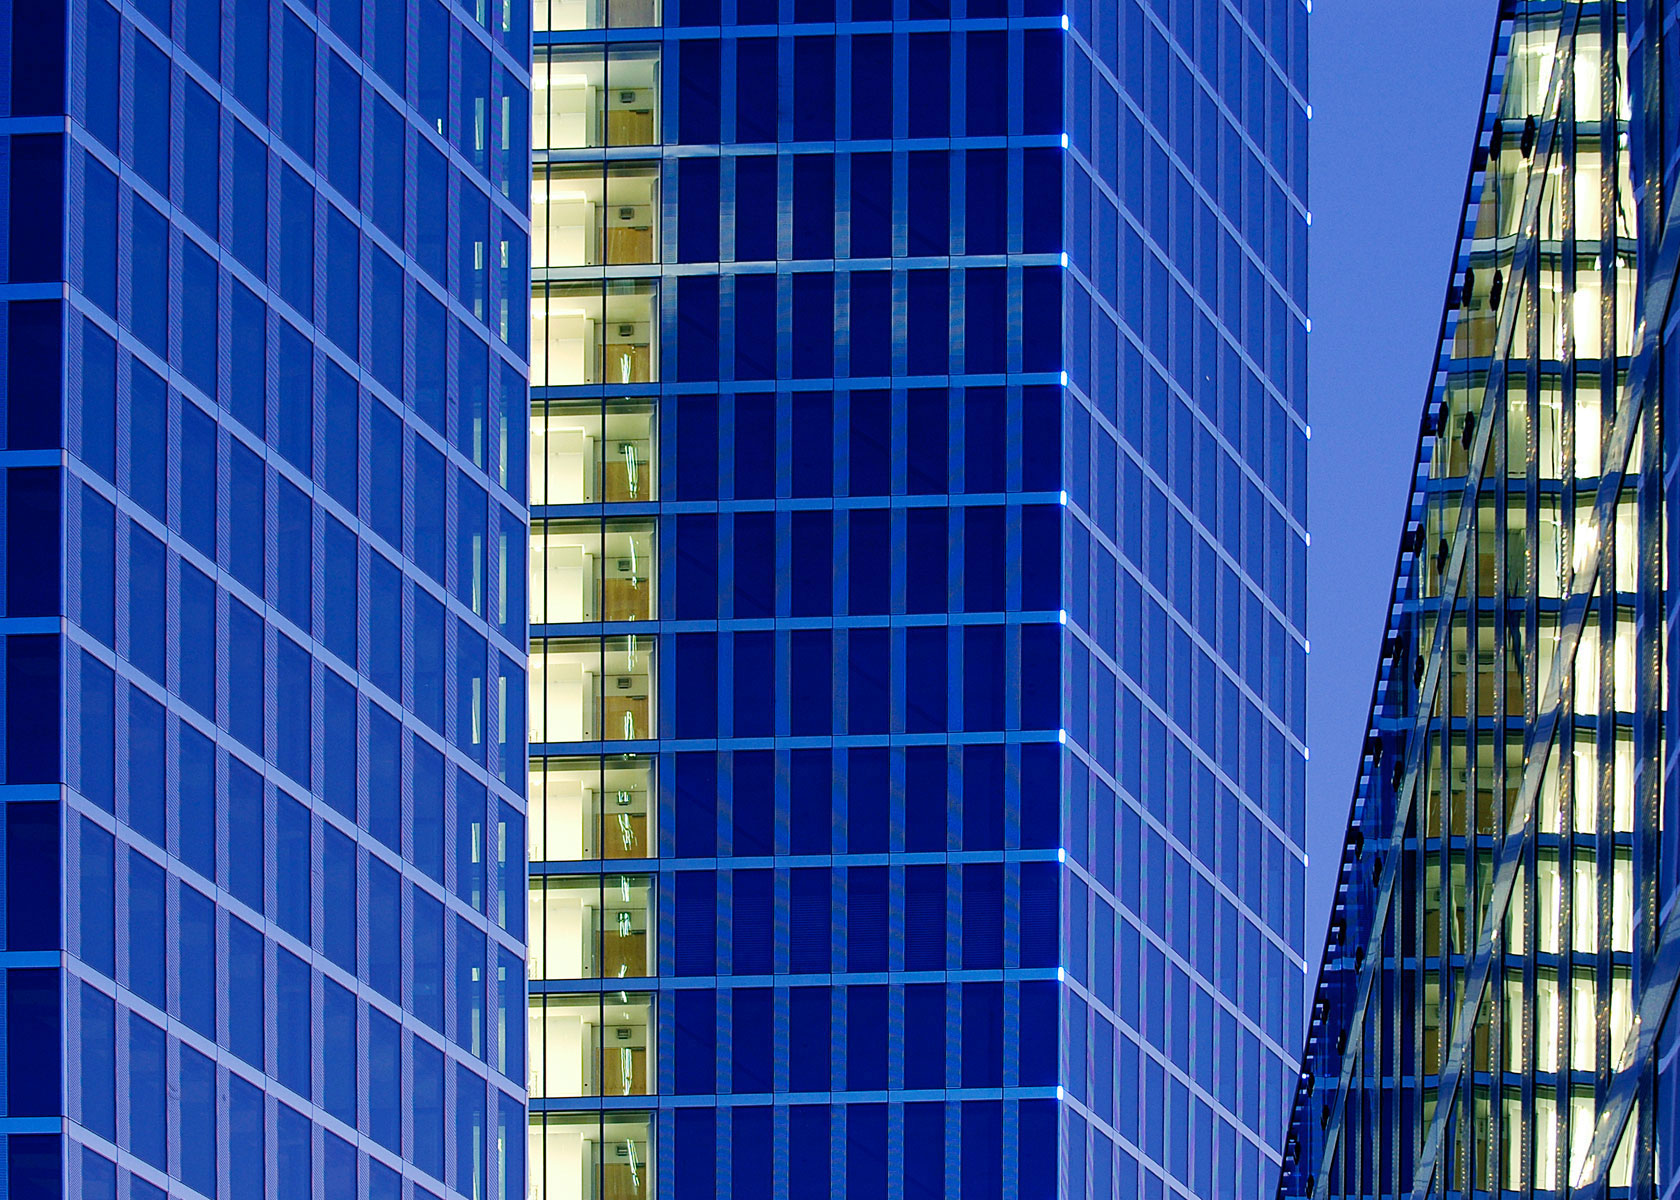 Architekturfotos: Highlight Towers, München